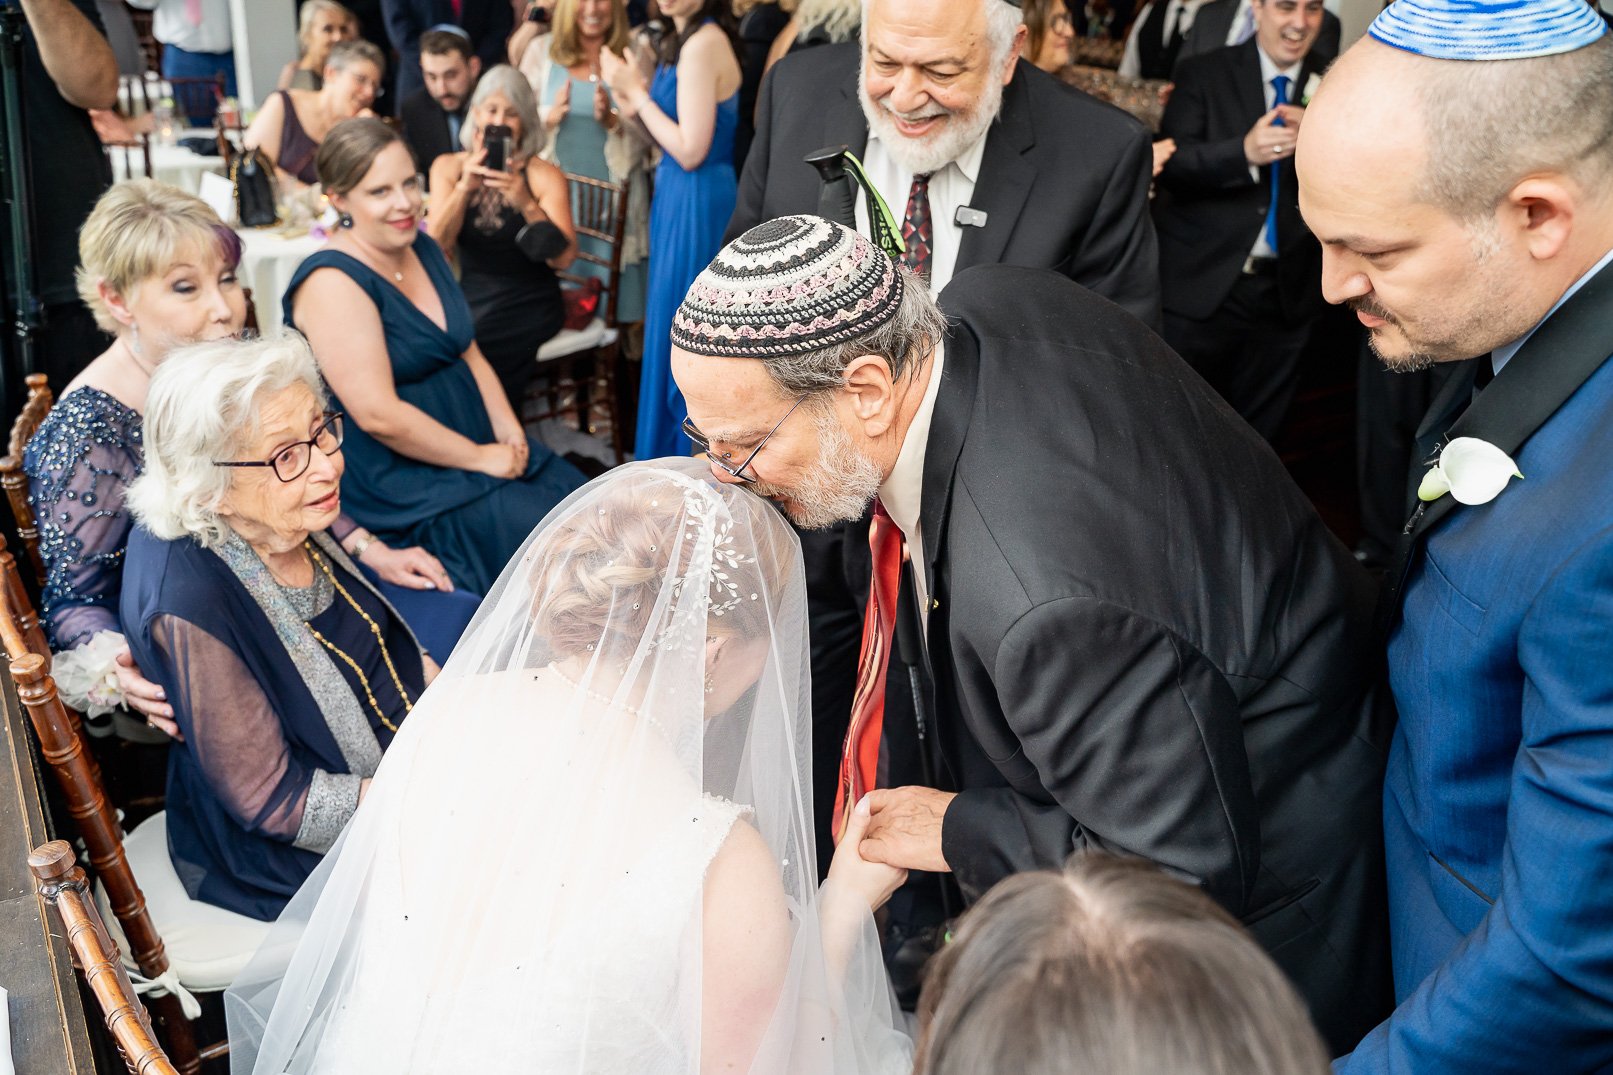 Long-Island-NewYork-Jewish-wedding-32.jpg